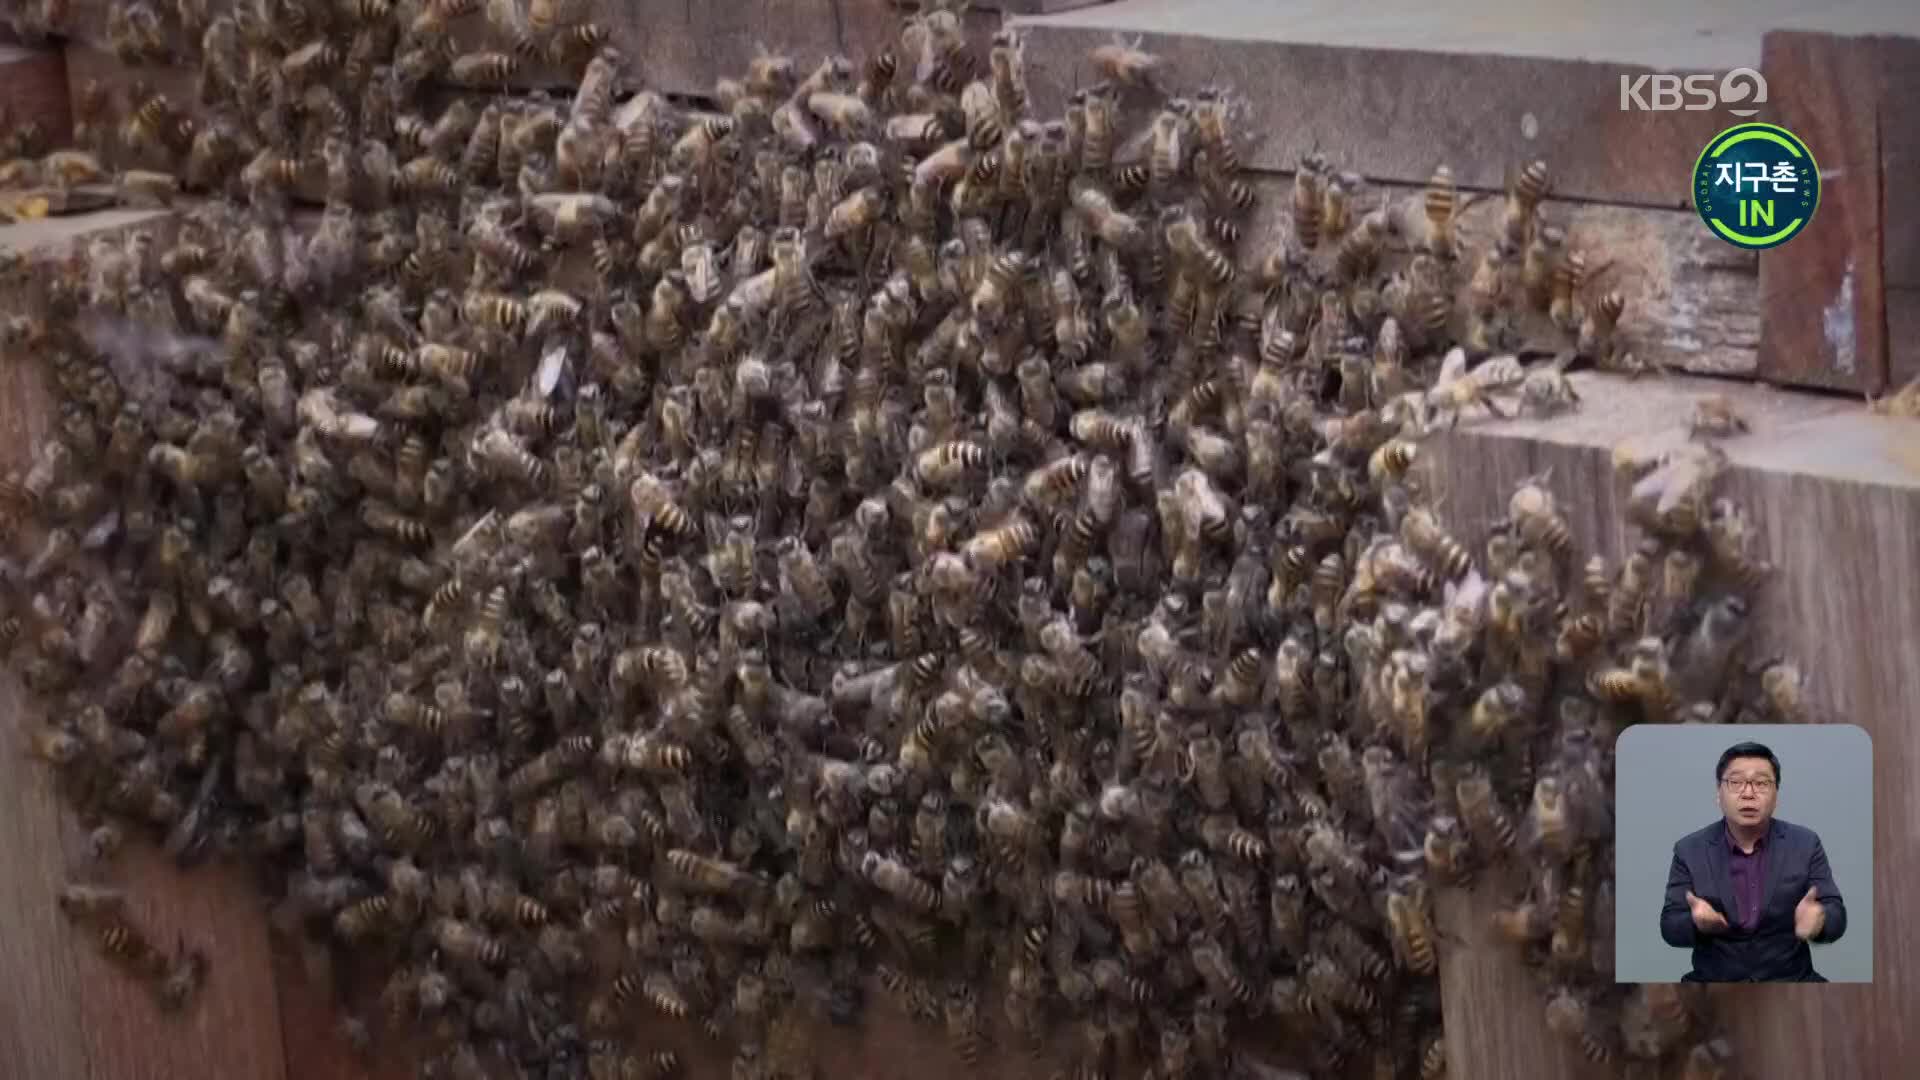 [지구촌 IN] 생물다양성 파수꾼 ‘꿀벌’이 사라지면?